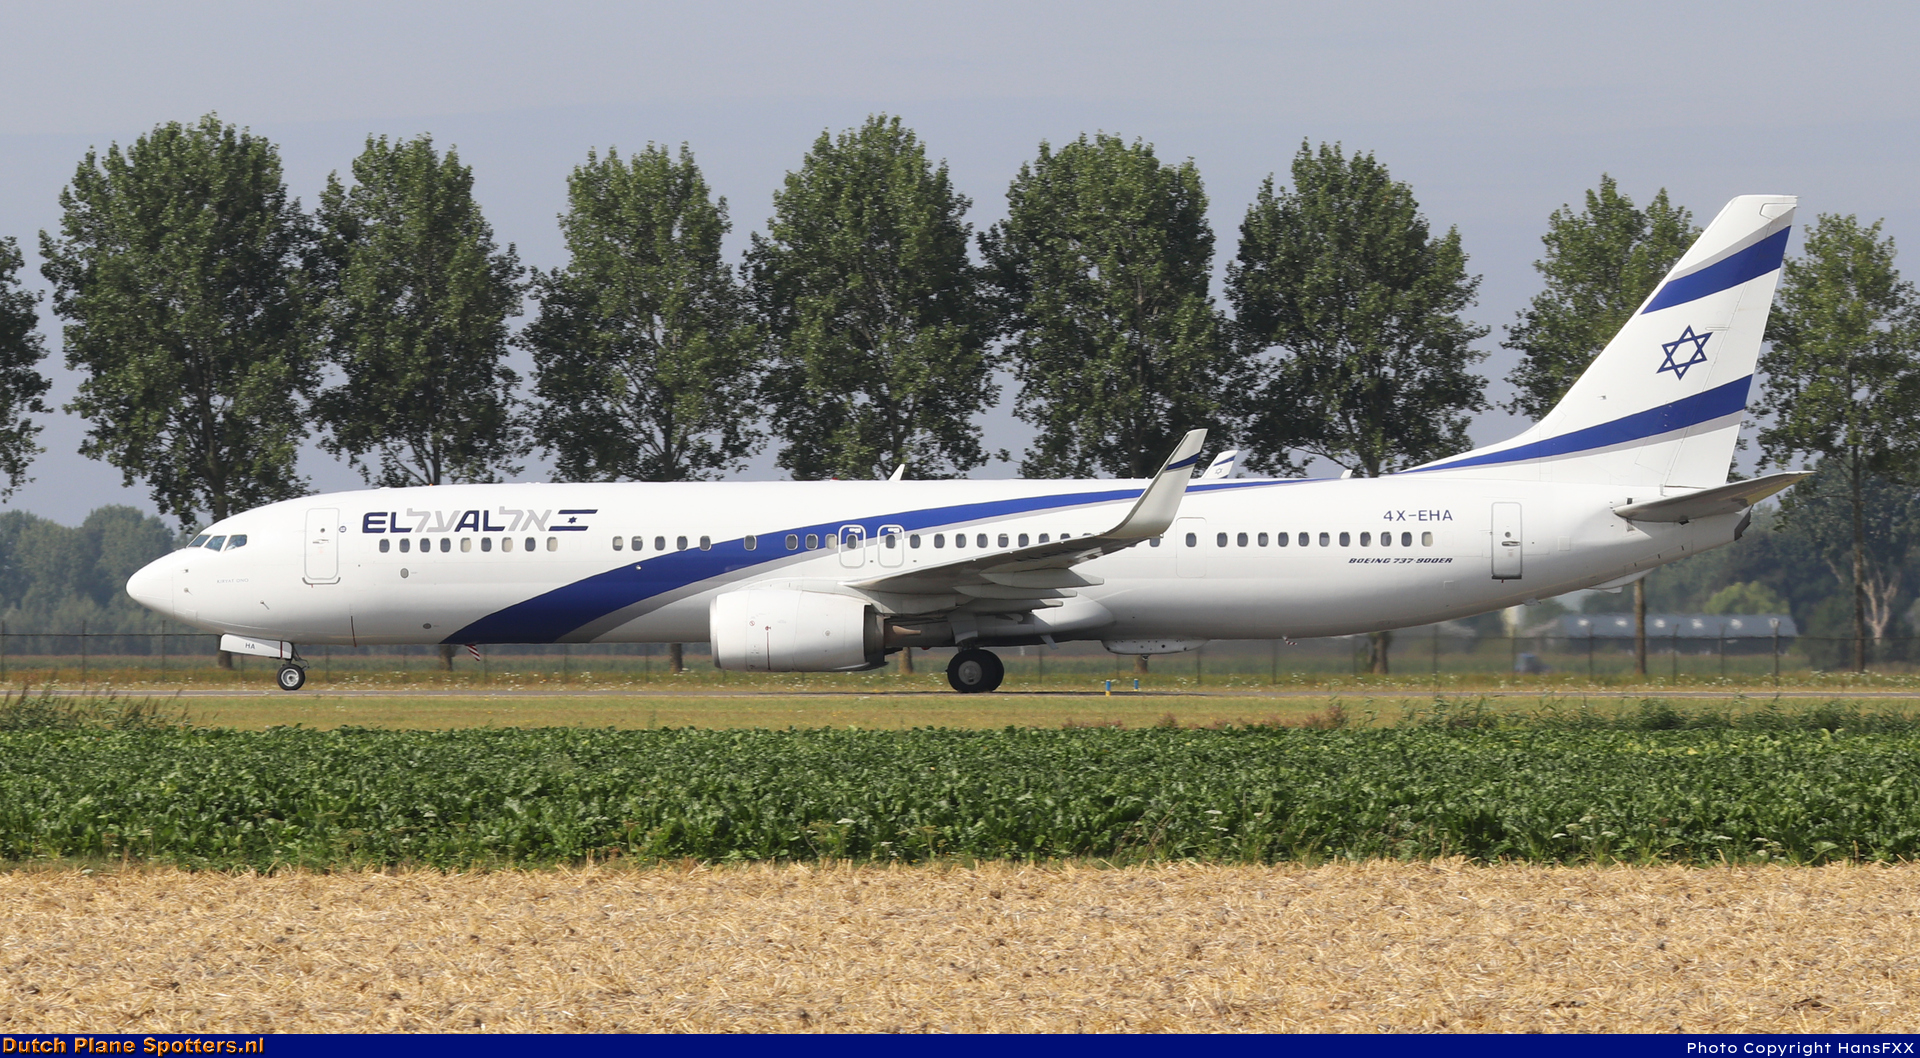 4X-EHA Boeing 737-900 El Al Israel Airlines by HansFXX